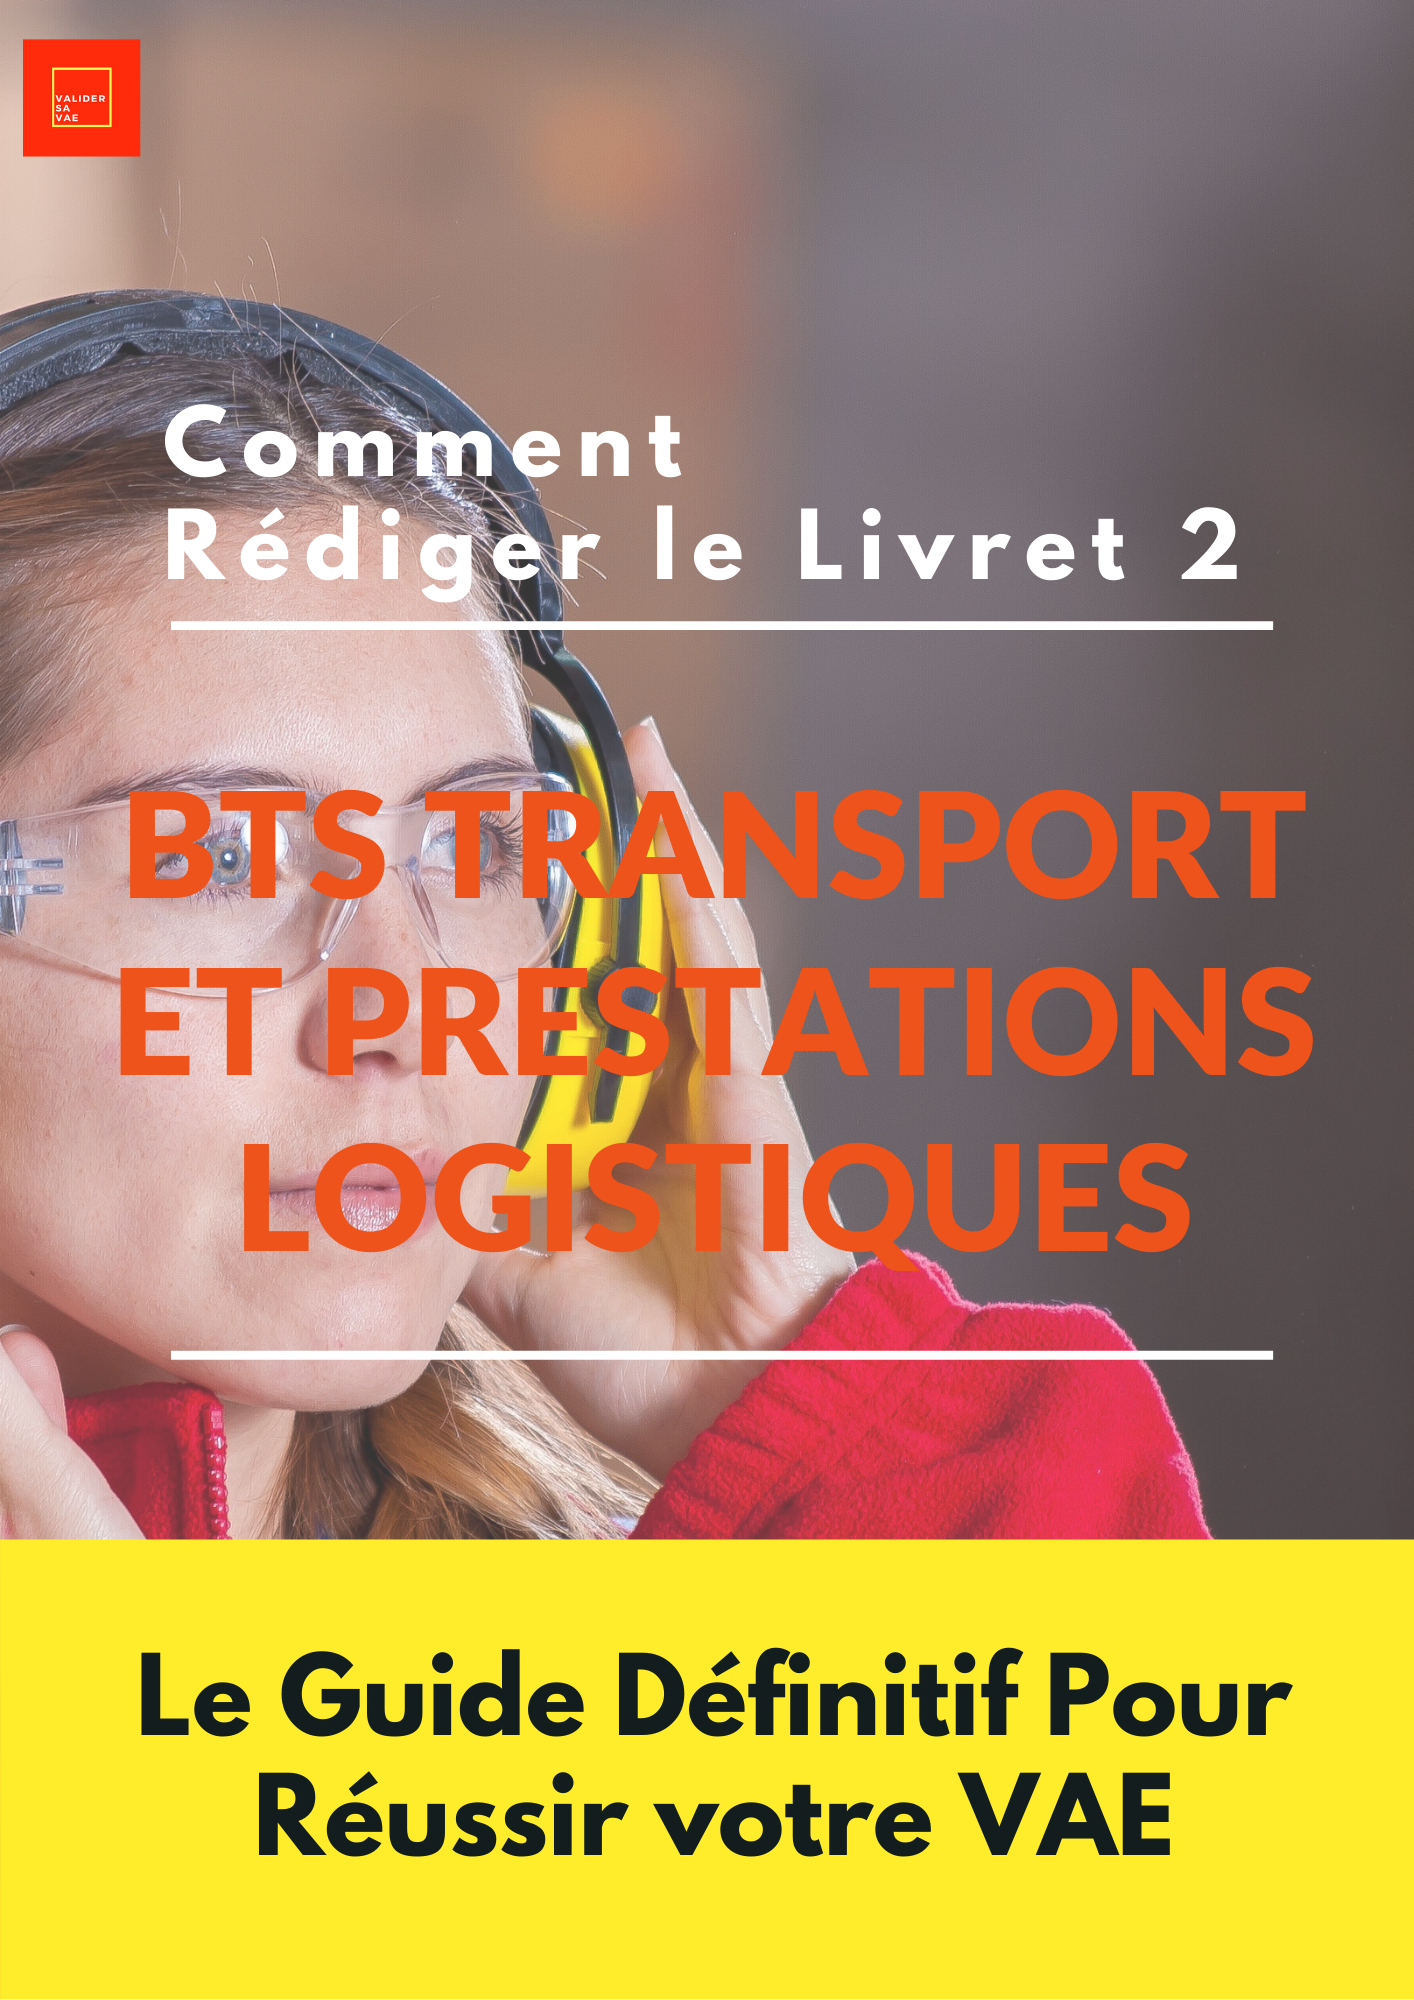 BTS Transport et Prestations Logistiques